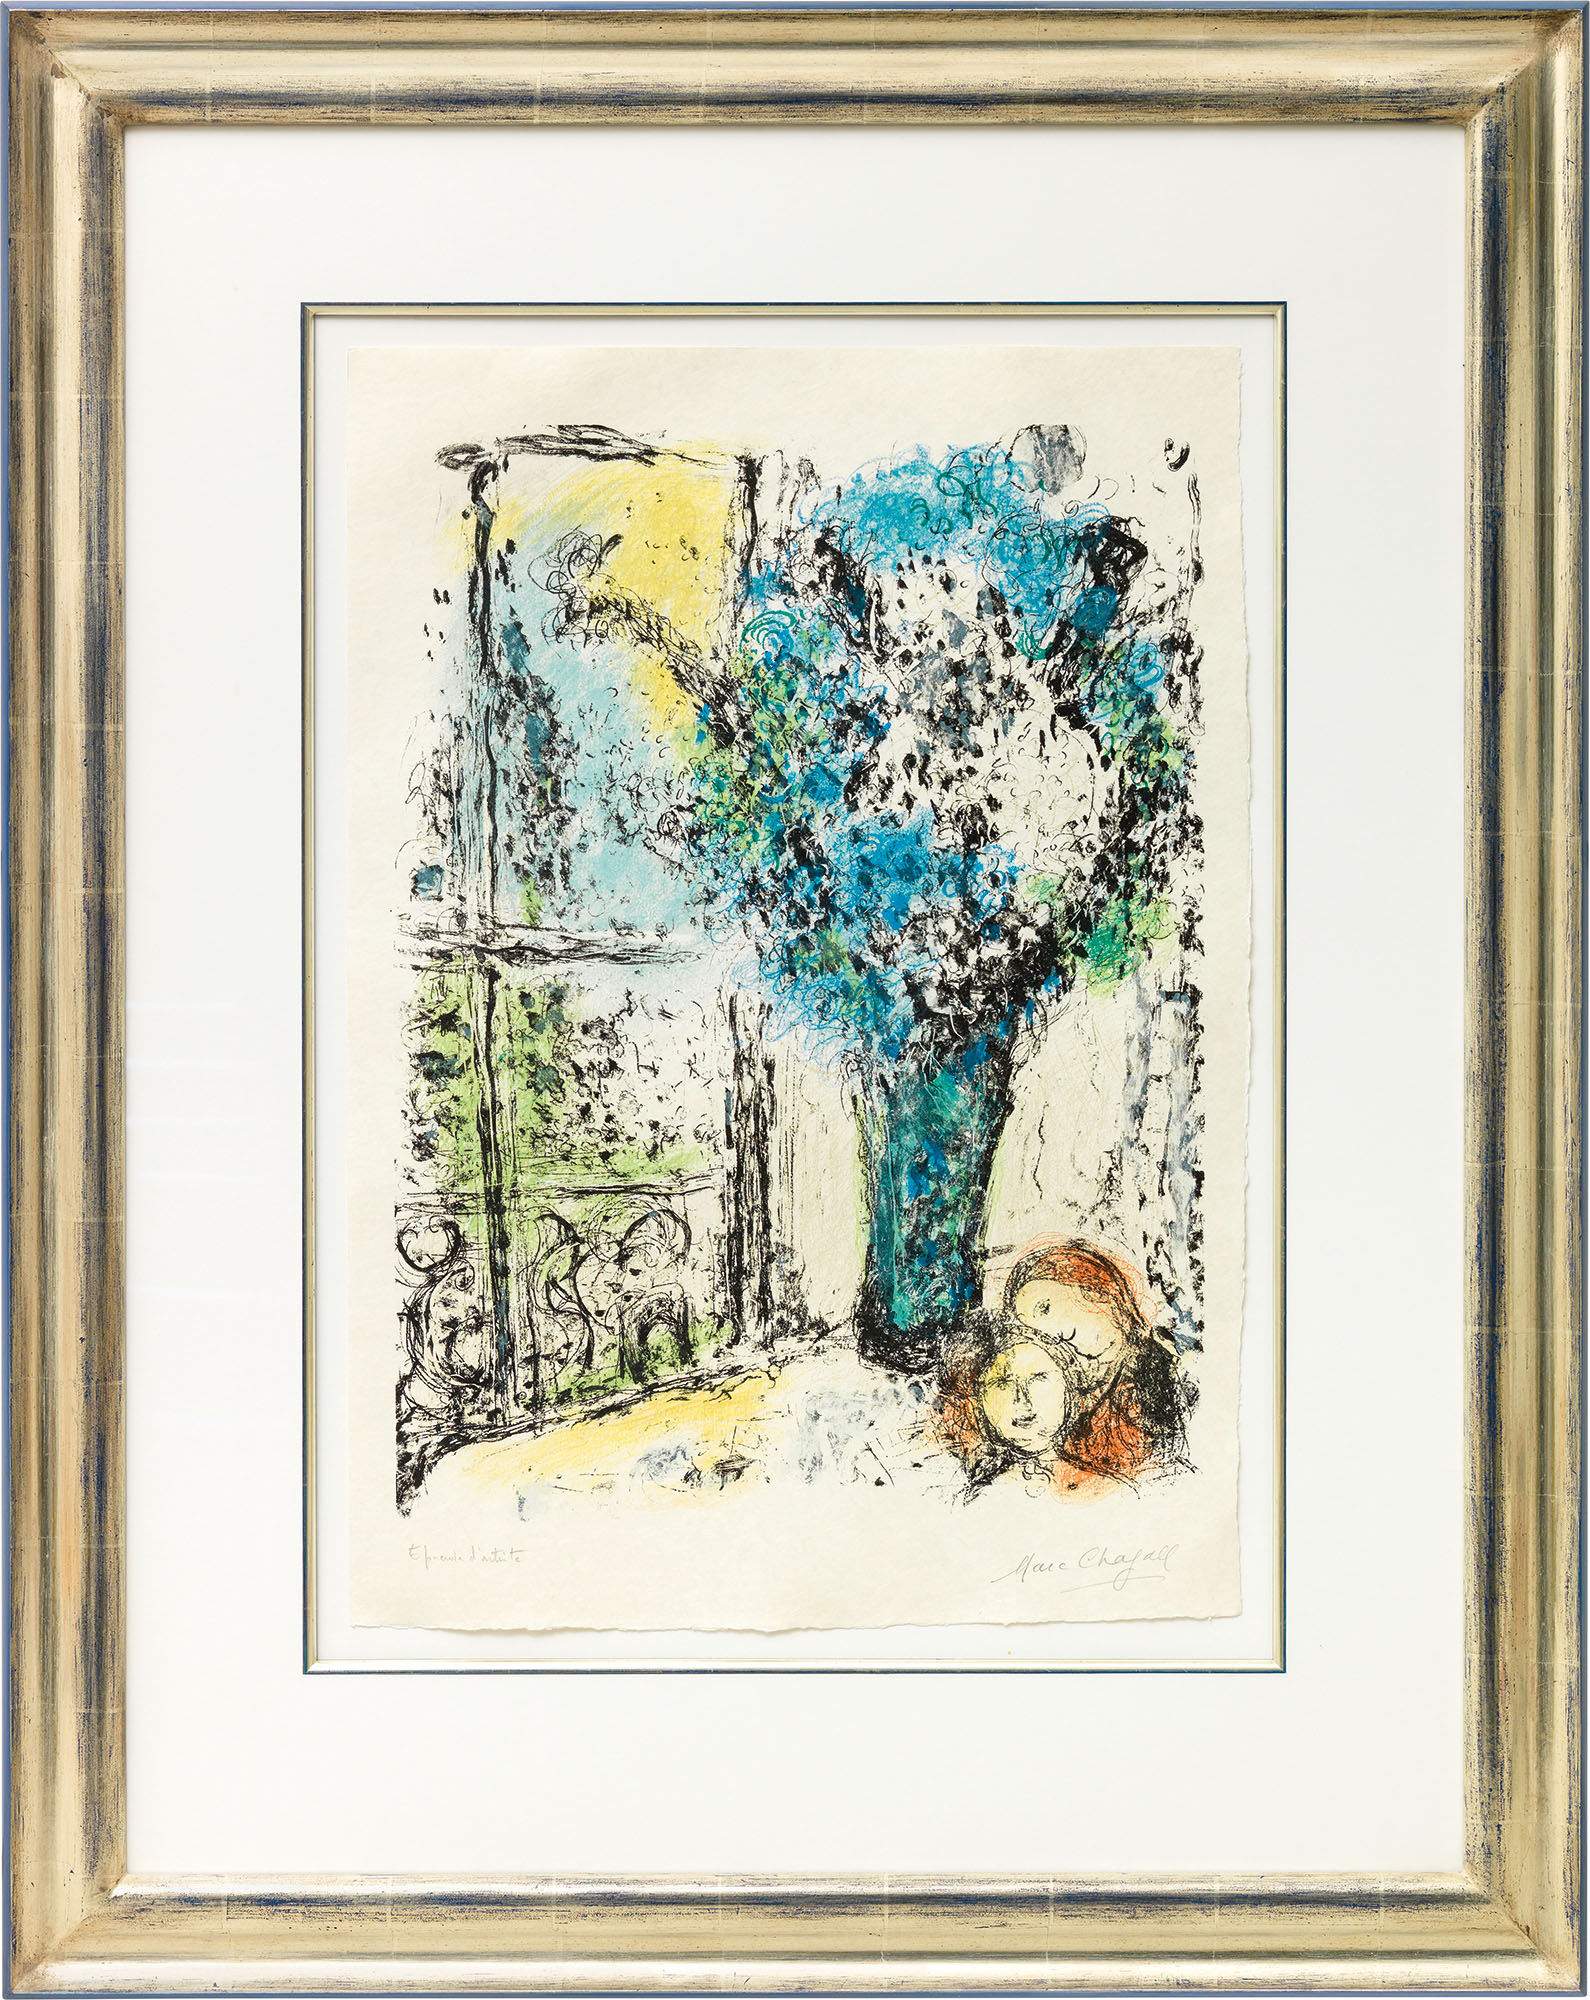 Picture "Le Bouquet bleu" (1974) by Marc Chagall